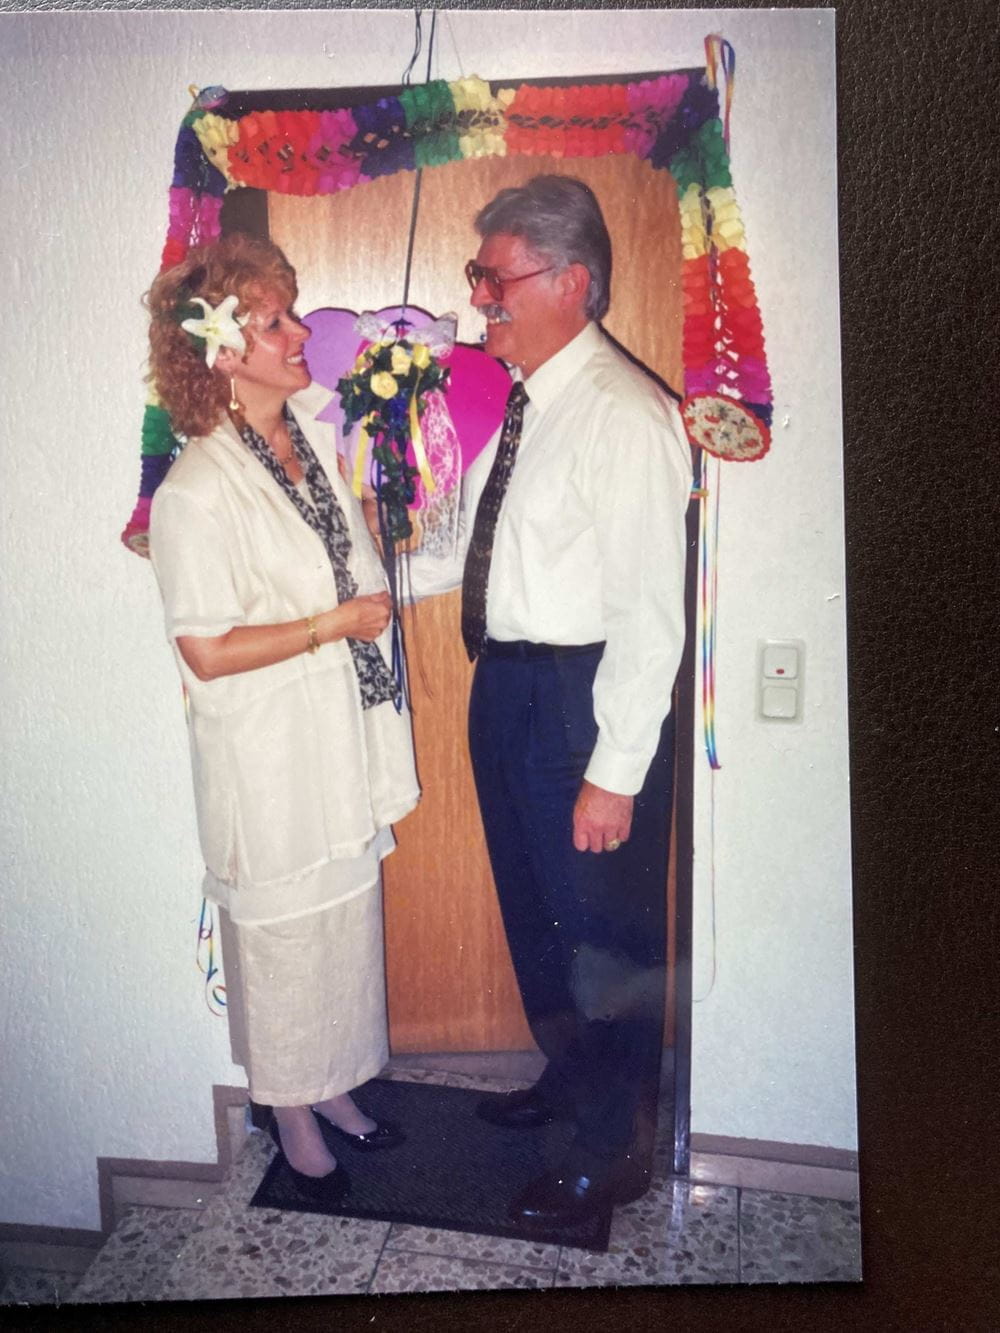 Ilka und Peter Flesch posieren vor einer geschmückten Tür anlässlich ihrer Hochzeit (Quelle: privat)